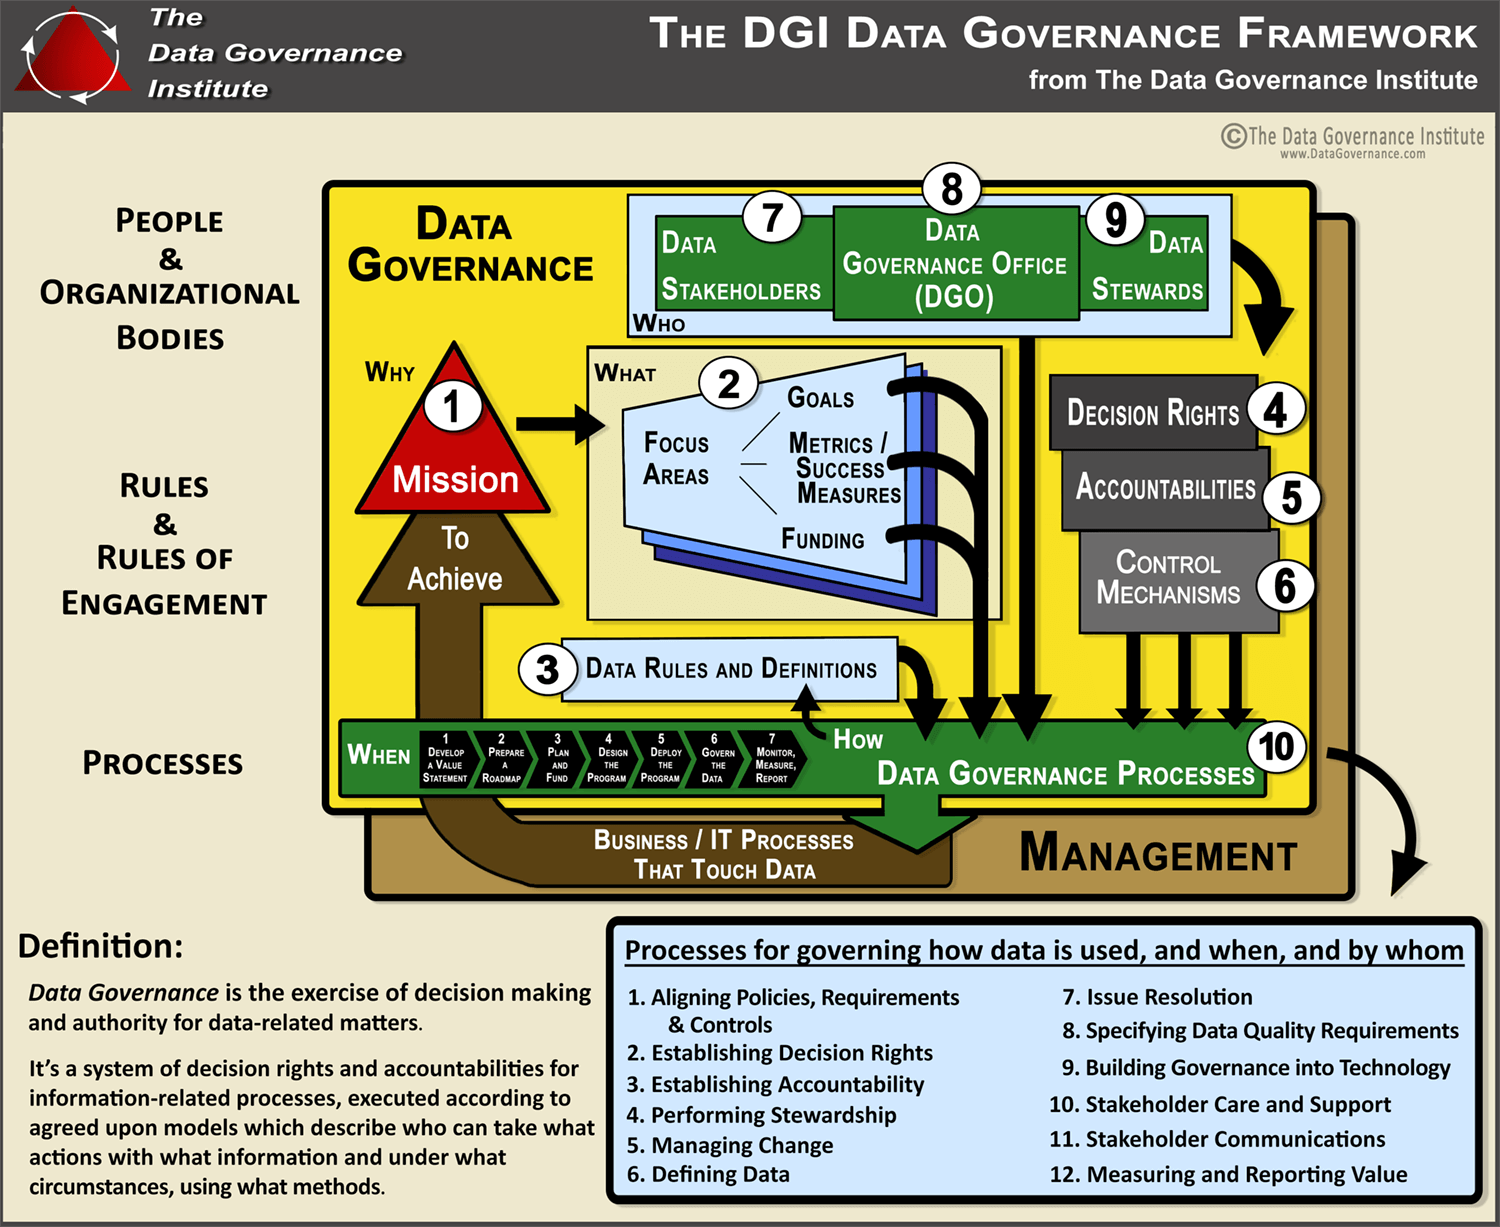 DGI (Data Governance Institute) model